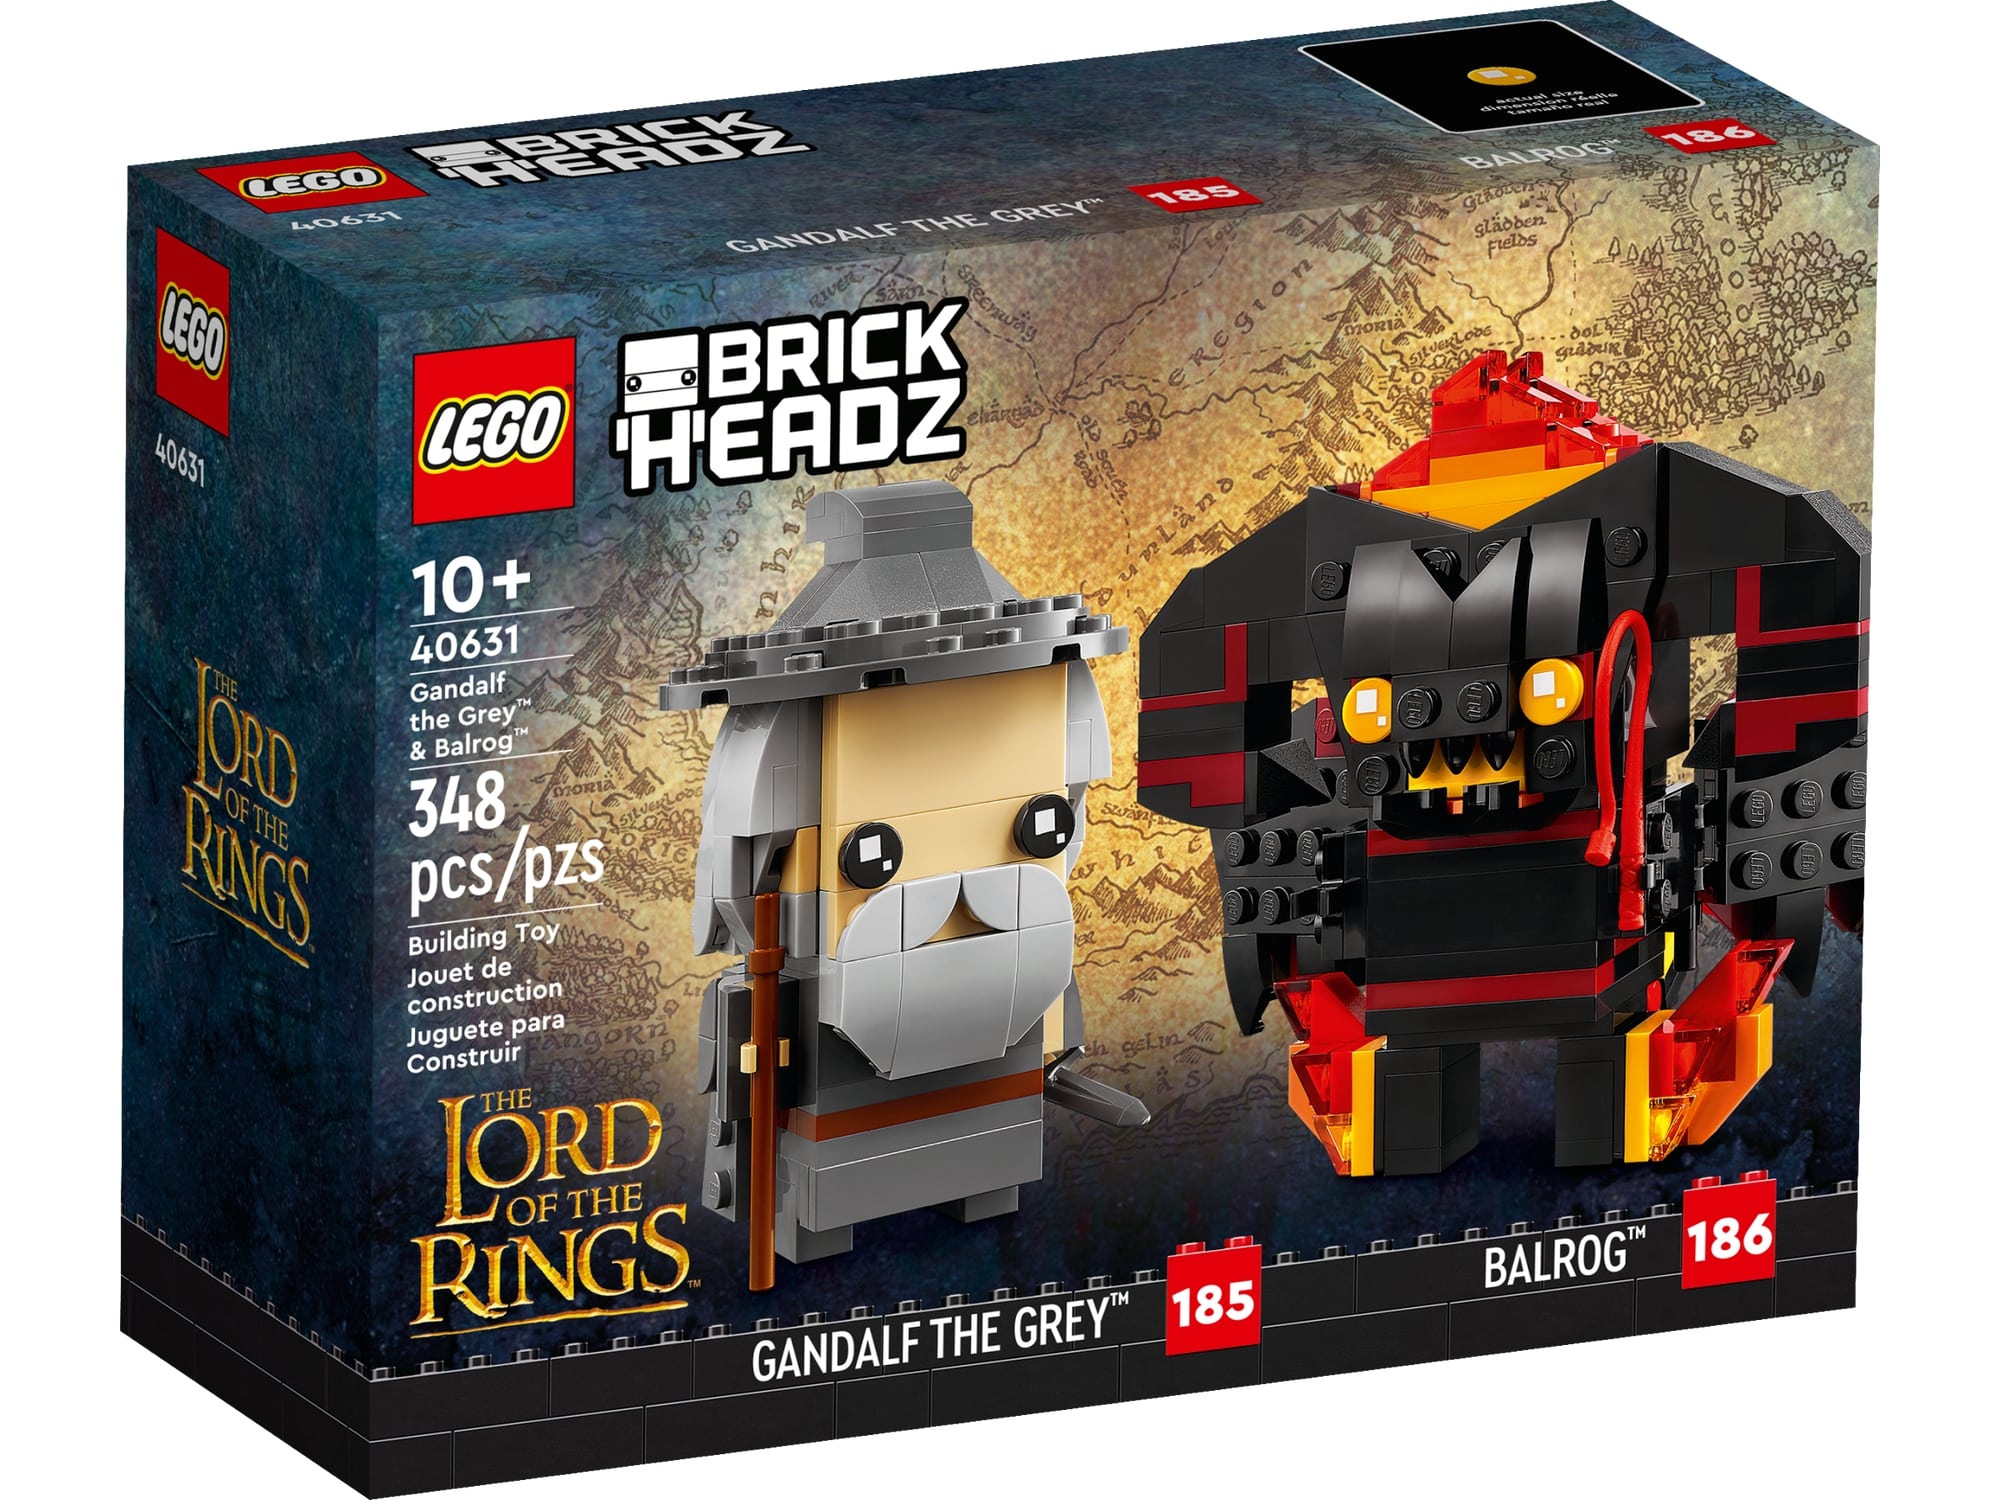 LEGO Brickheadz 40631 Gandalf Der Graue Und Balrog 3